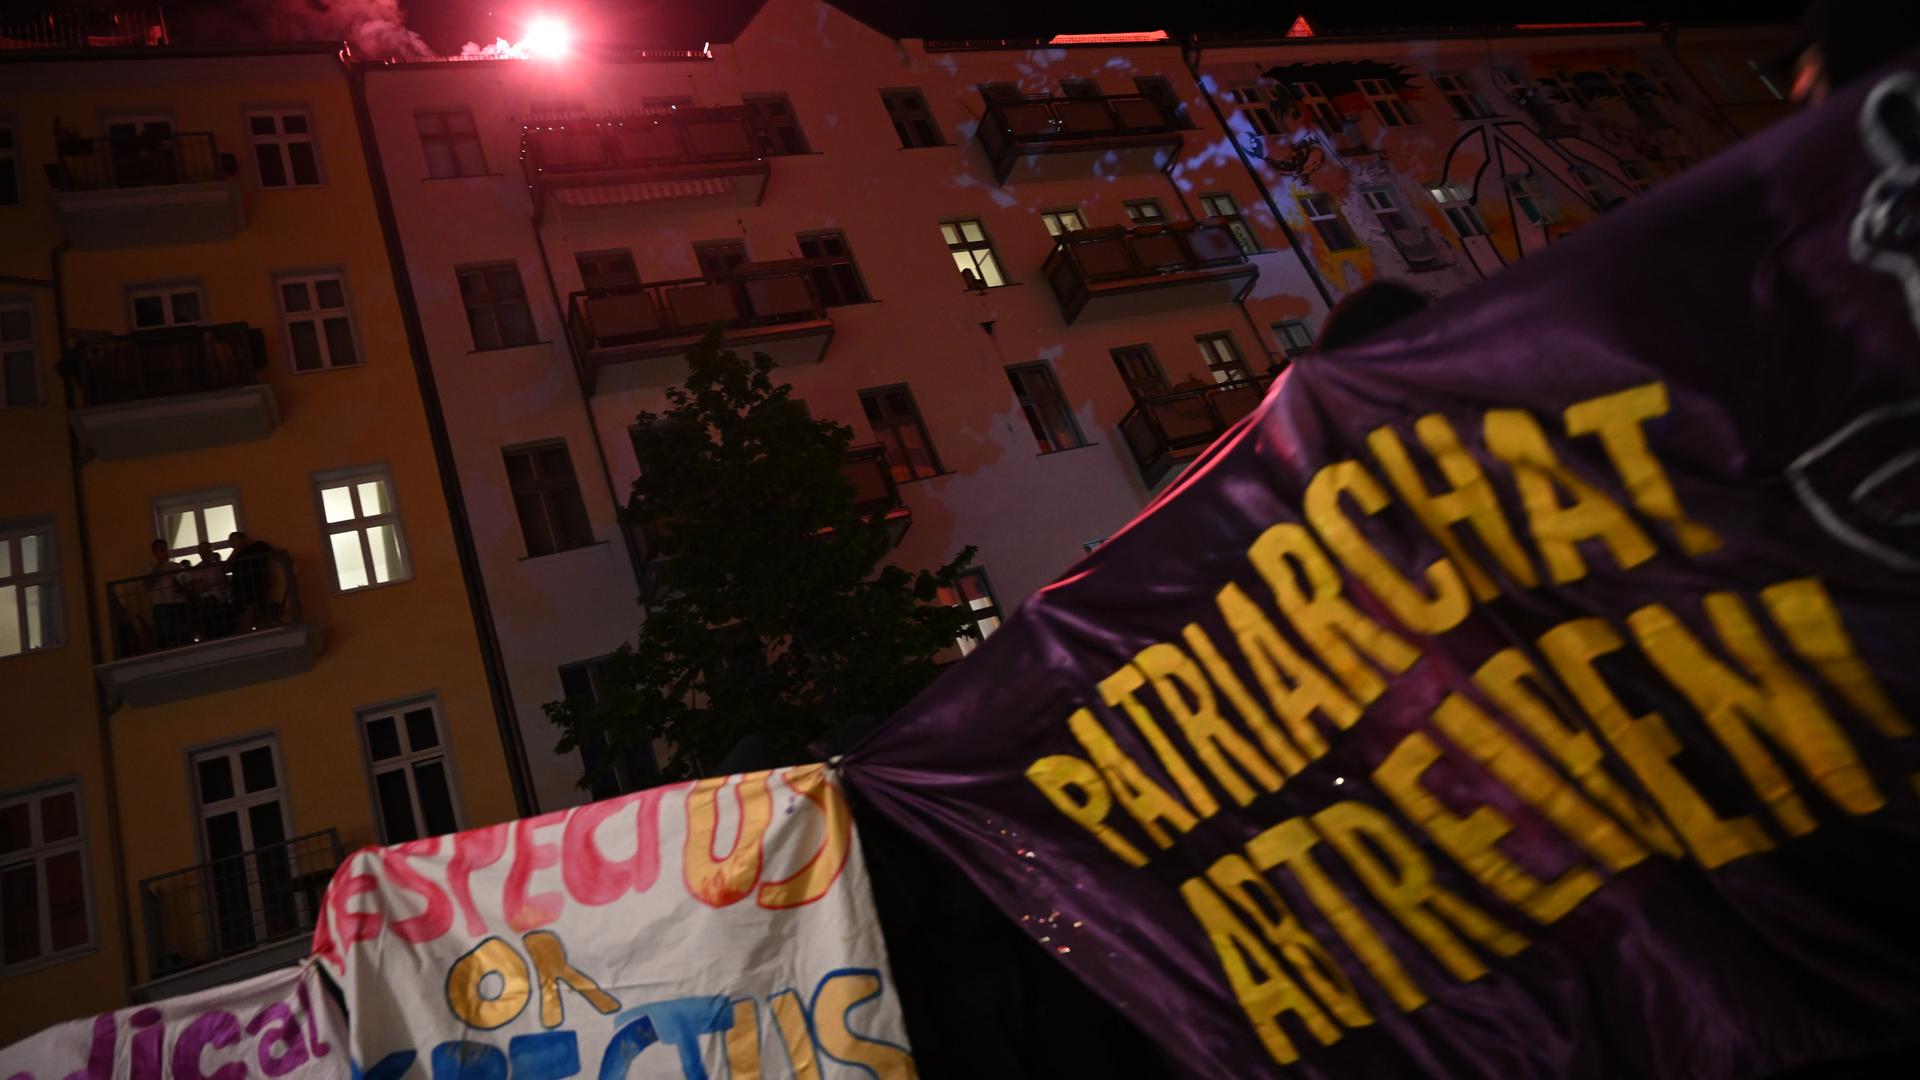 Demonstranten hissen Fahnen. Auf einer steht: "Patriarchat Abtreten!"